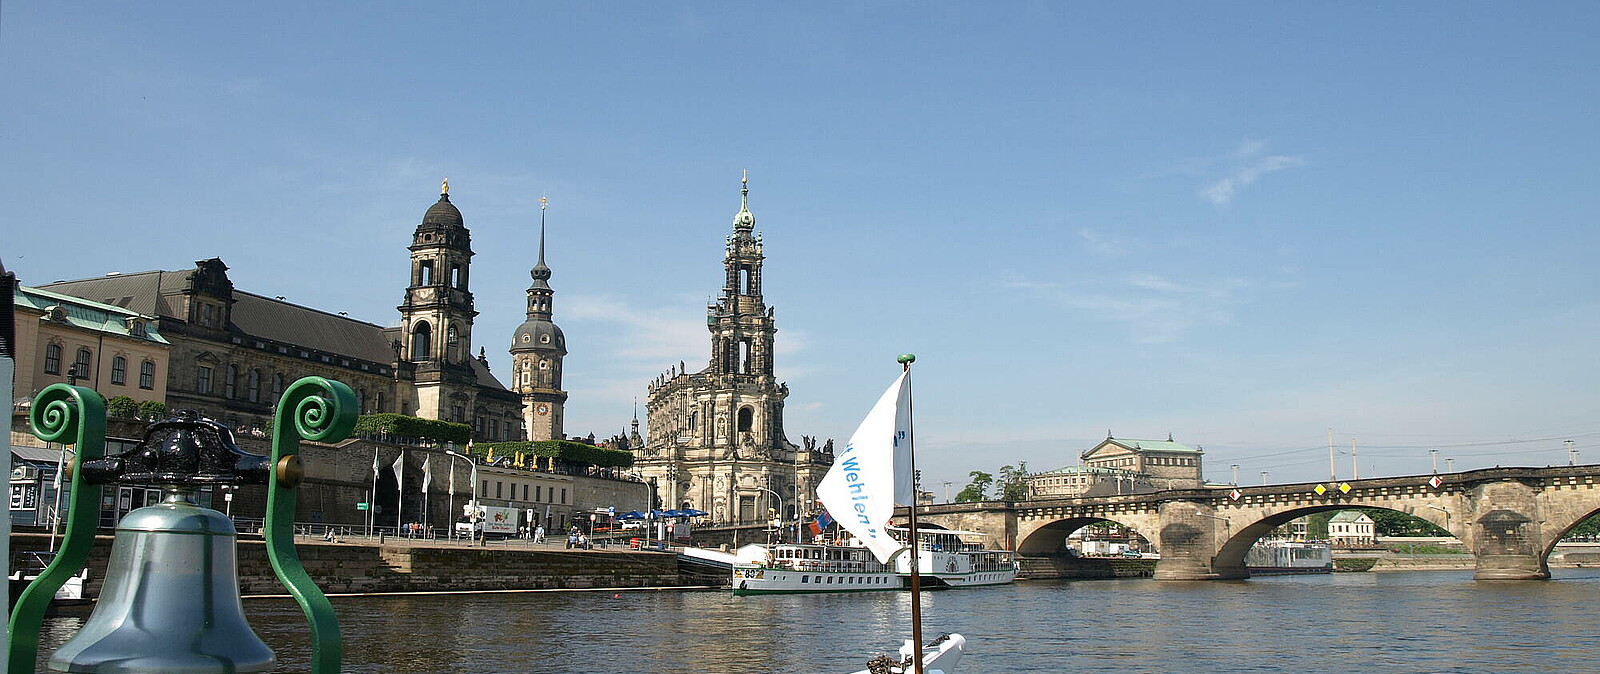 Erleben Sie die entschleunigende Wirkung einer entspannten Schifffahrt auf der Elbe und erkunden Sie unser schönes Dresden auch vom Wasser aus bei dieser anderen Art der Stadtrundfahrt durch Elbflorenz mit einem der ältesten Schaufelraddampfer der Welt.